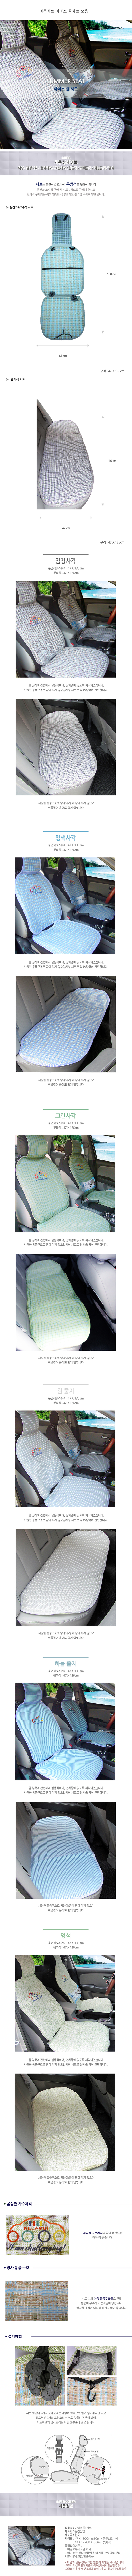 ub-auto-coolseat-6jong-long.jpg